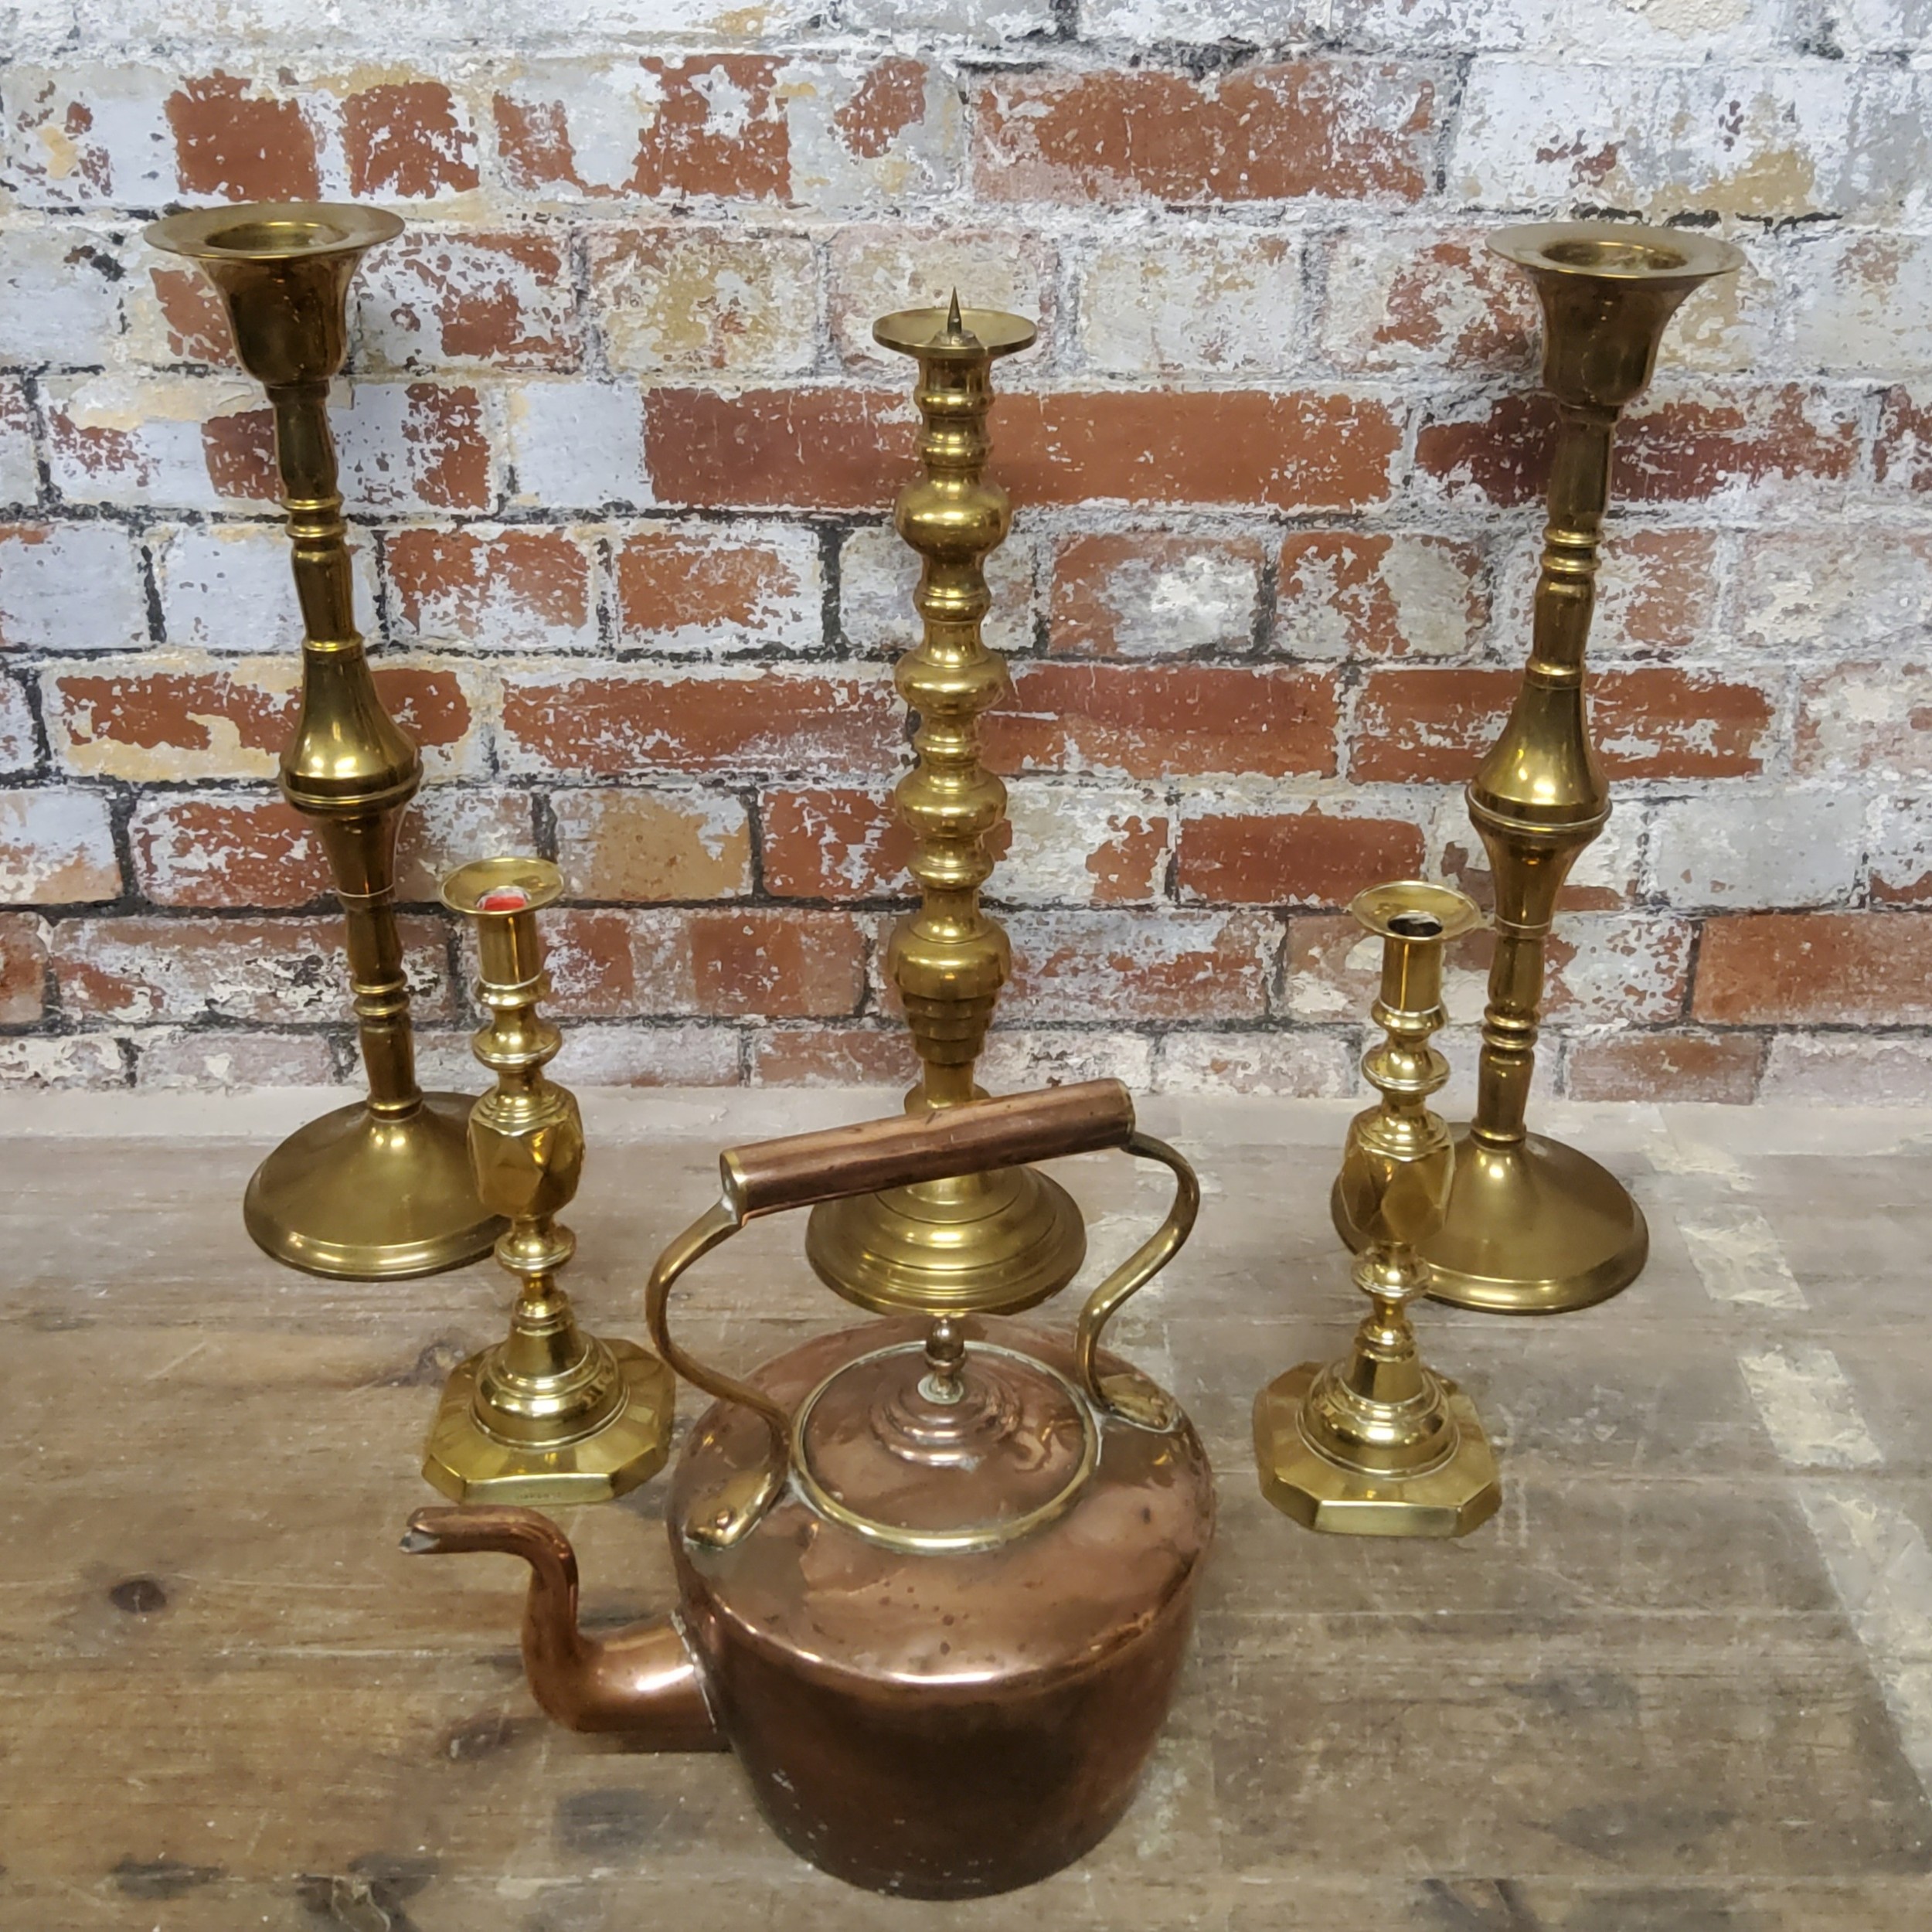 A pair of substantial ecclesiastical brass candlesticks 53.5cms high; a smaller pair of brass